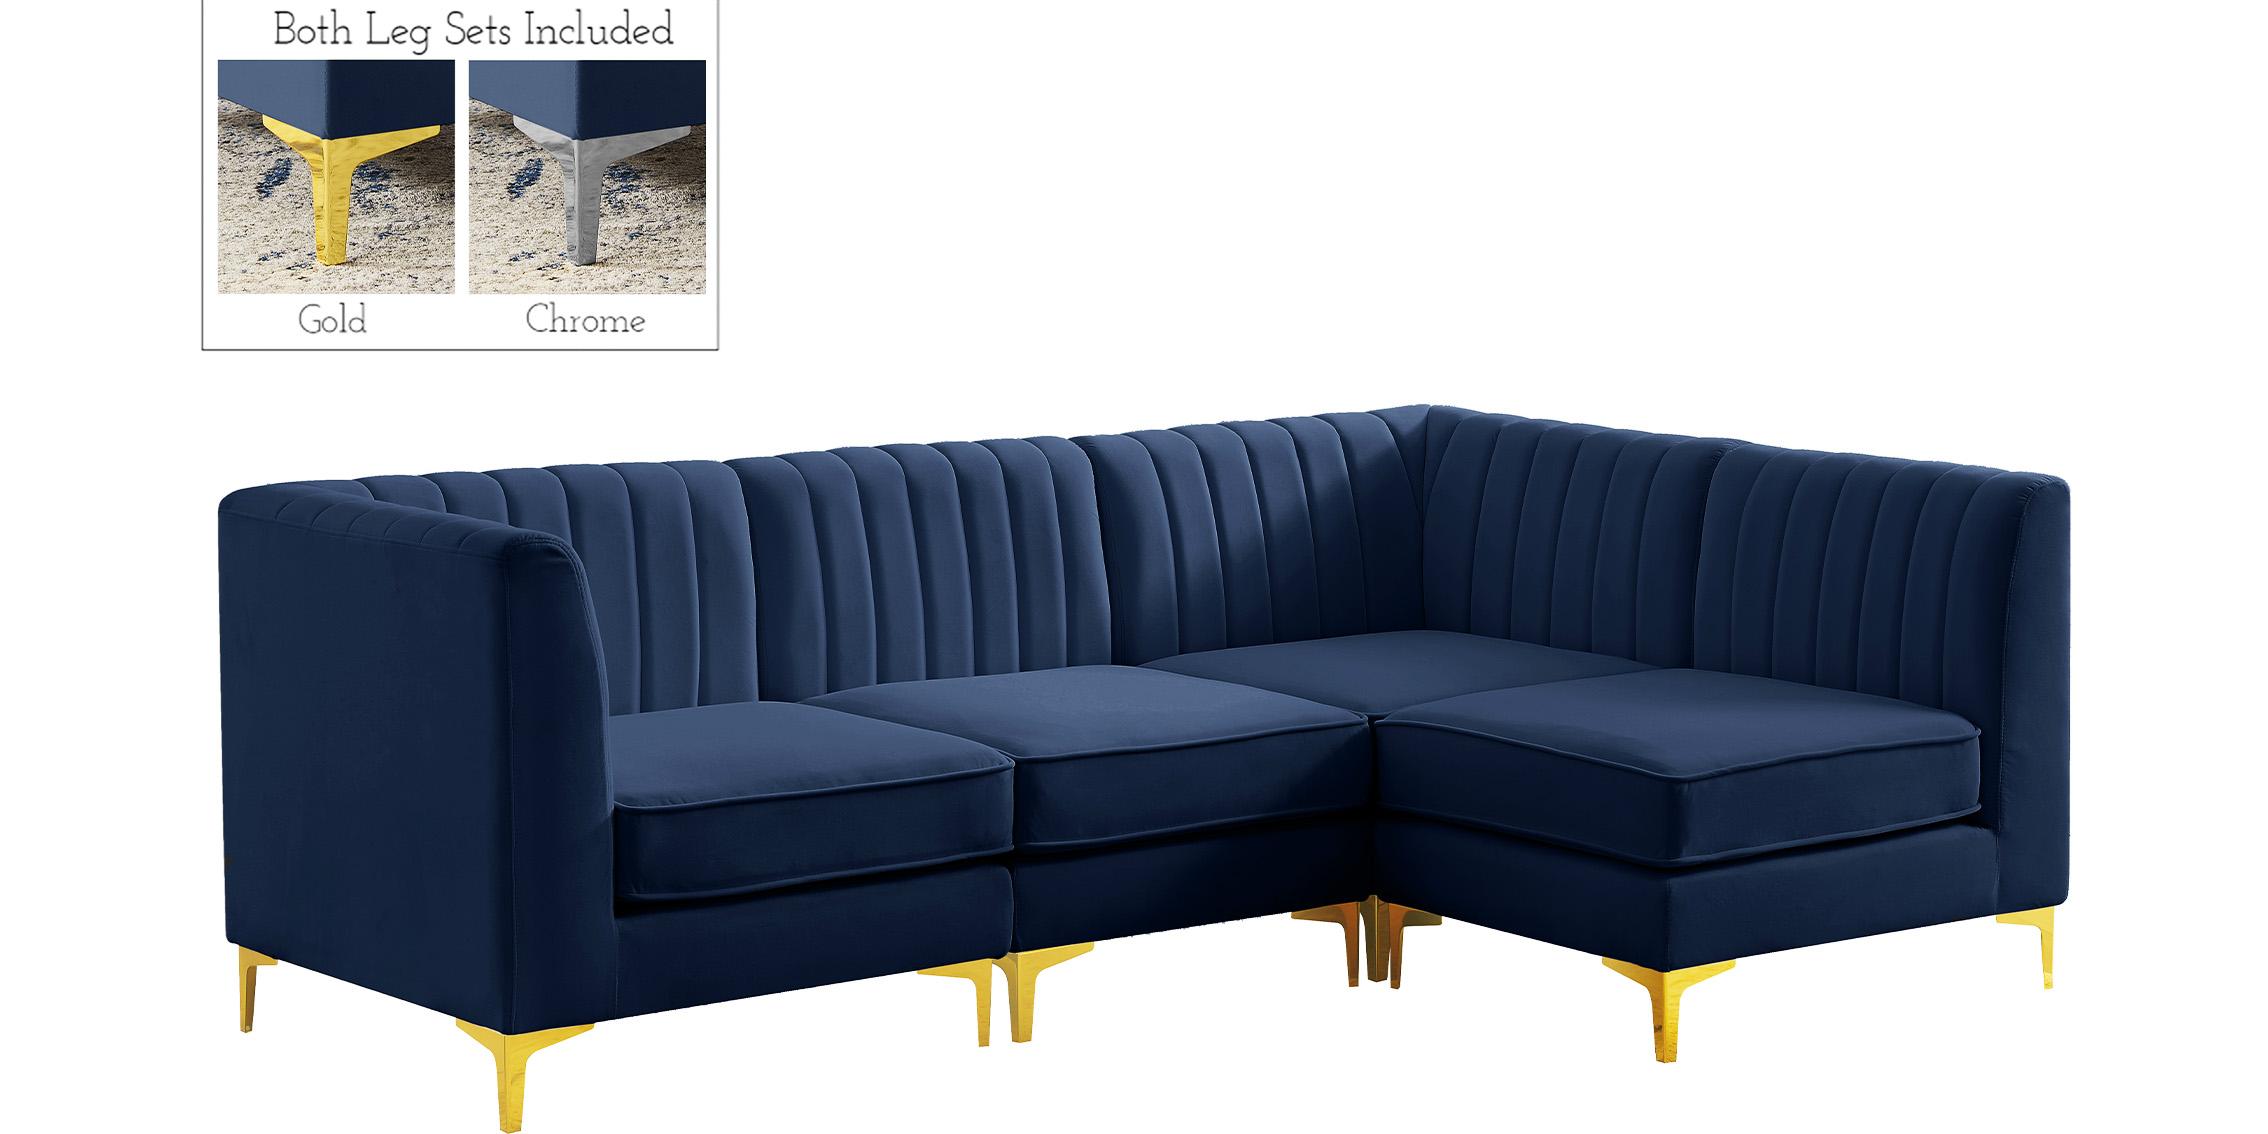 

    
Meridian Furniture ALINA 604Navy-Sec4A Modular Sectional Sofa Navy 604Navy-Sec4A
